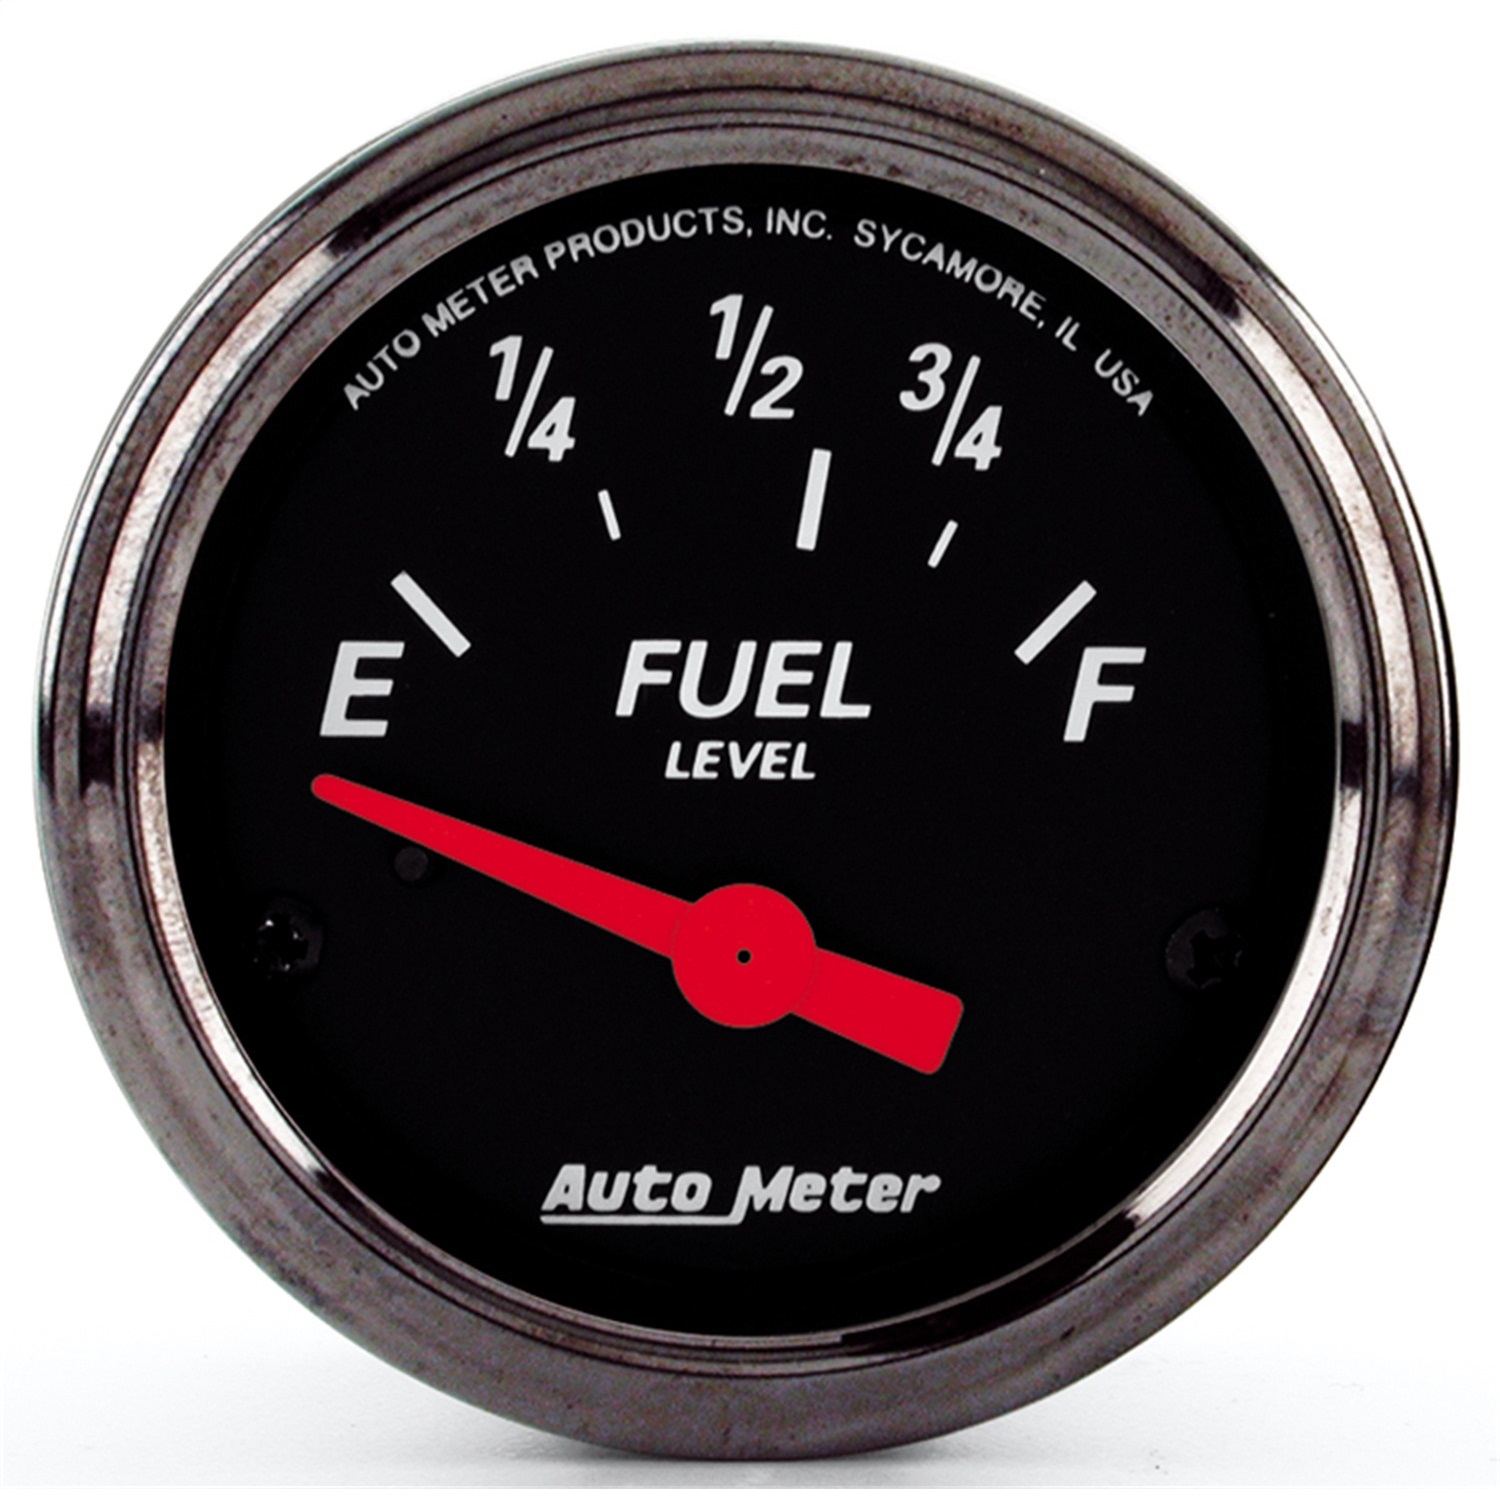 Auto Meter Auto Meter 1416 Designer Black; Fuel Level Gauge